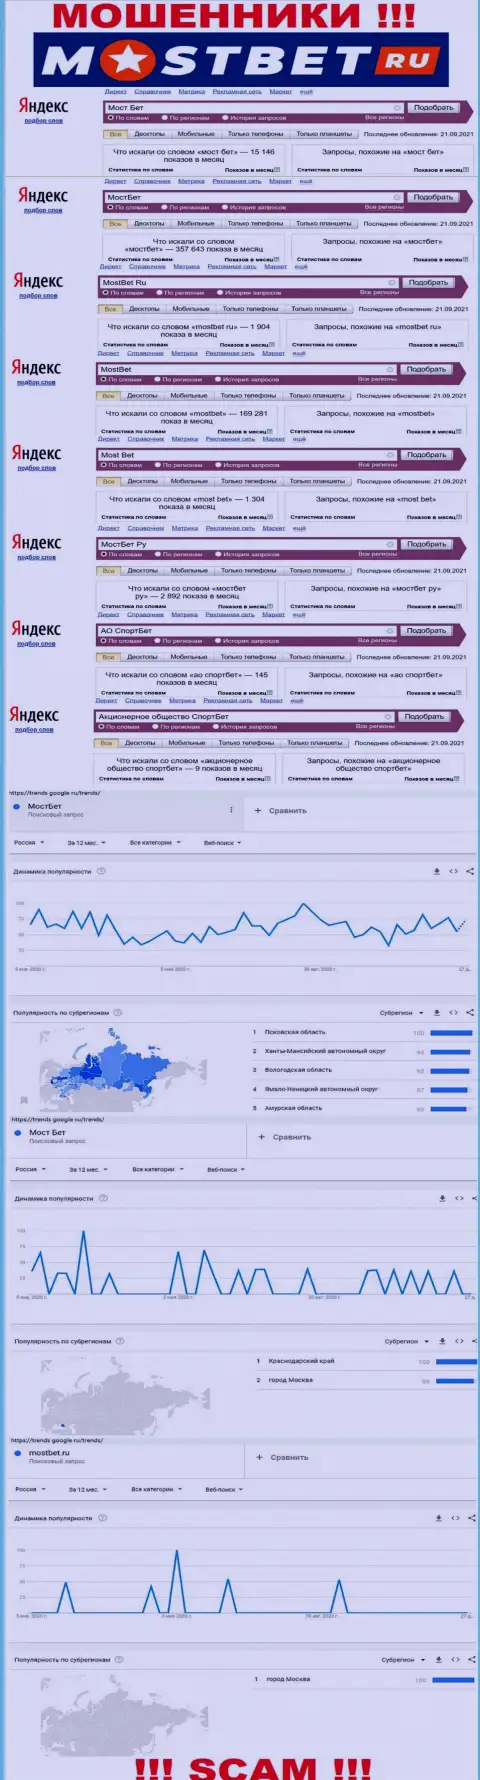 Насколько лохотрон MostBet Ru популярен в глобальной сети интернет ???